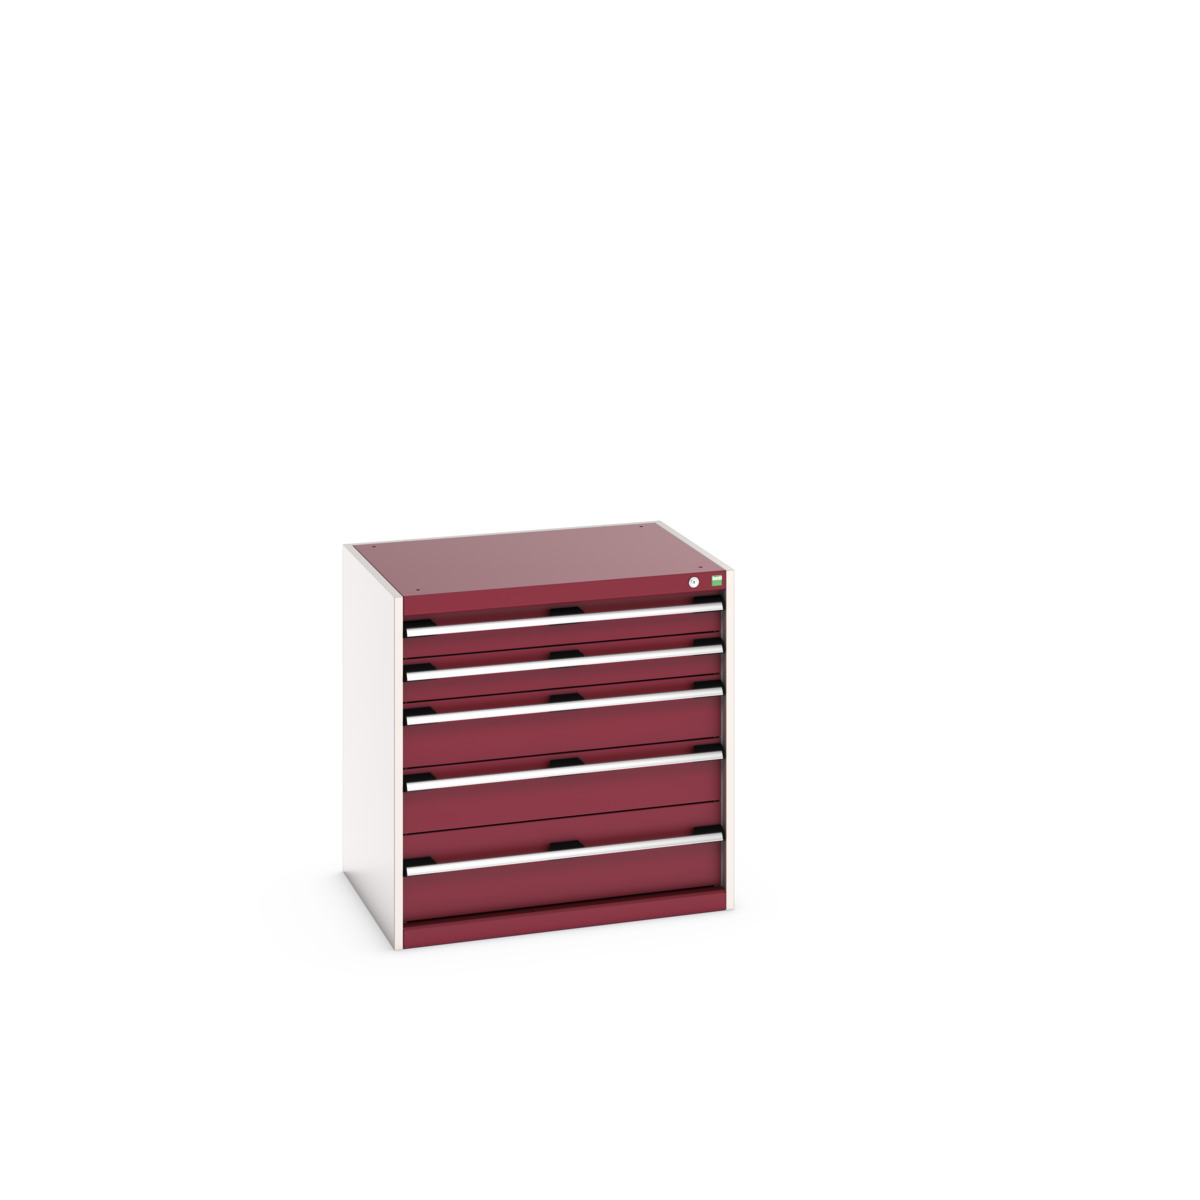 40020026.24V - cubio drawer cabinet